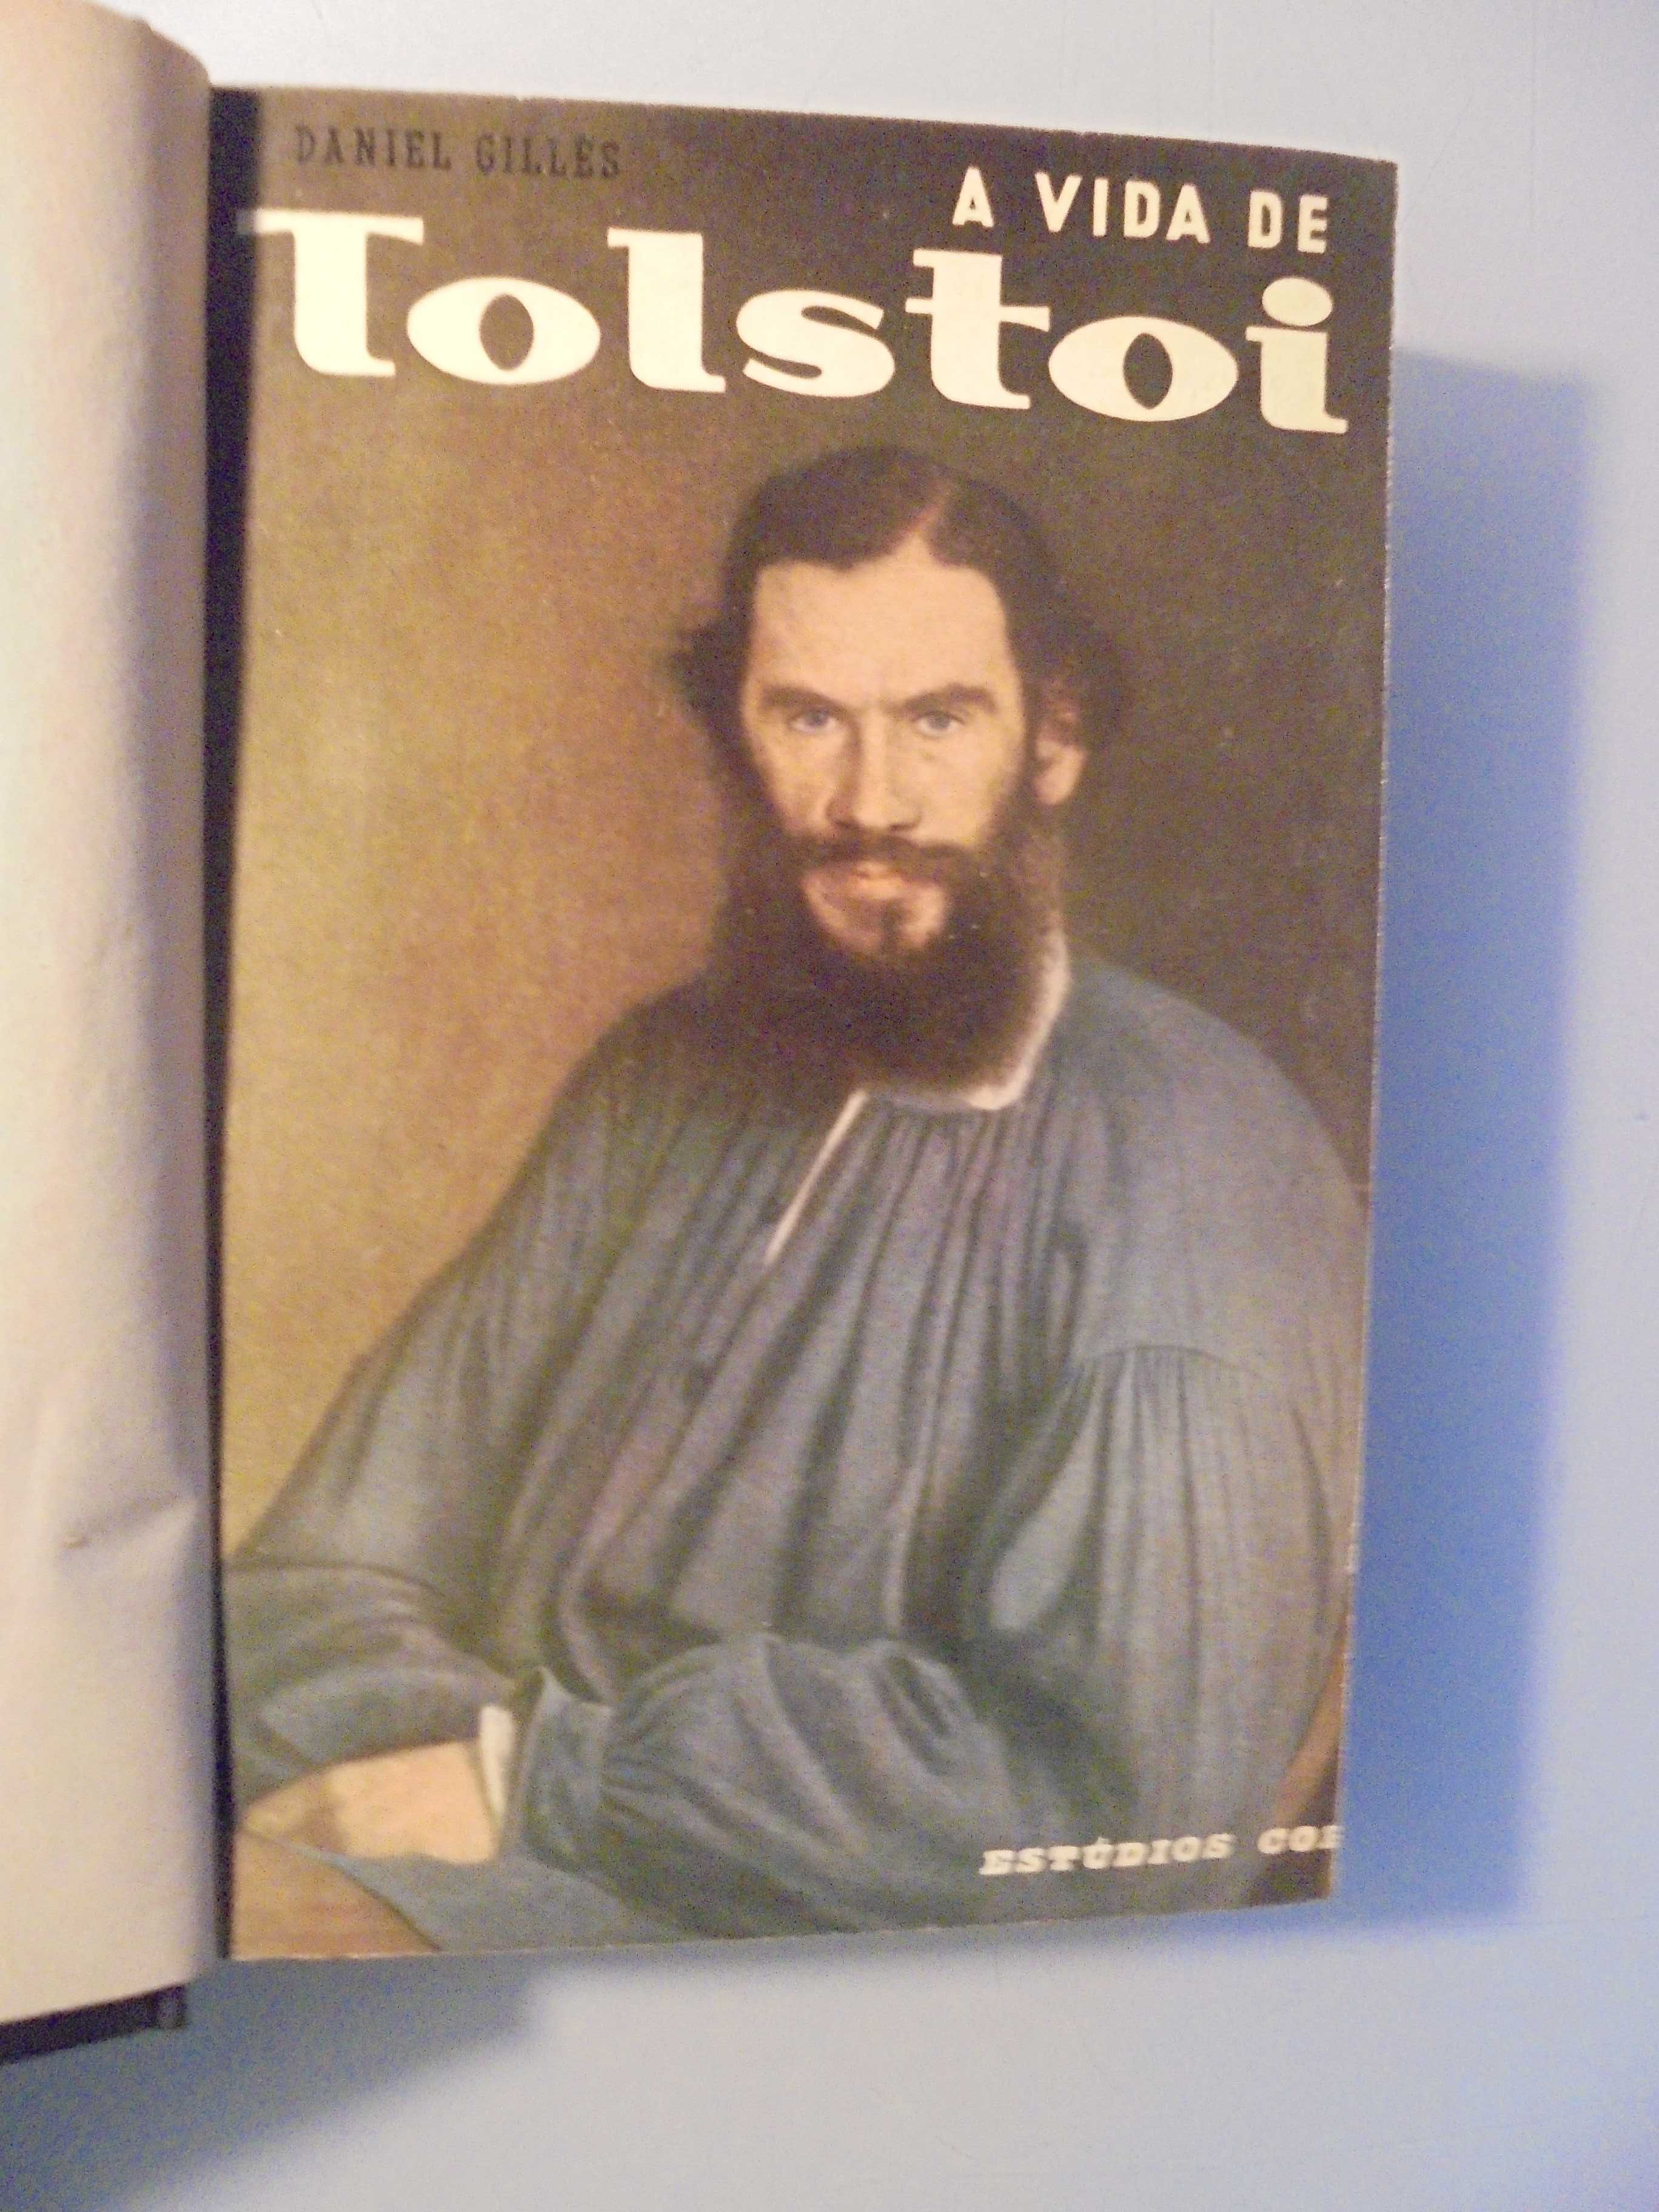 Gilles (Daniel);A Vida de Tolstoi